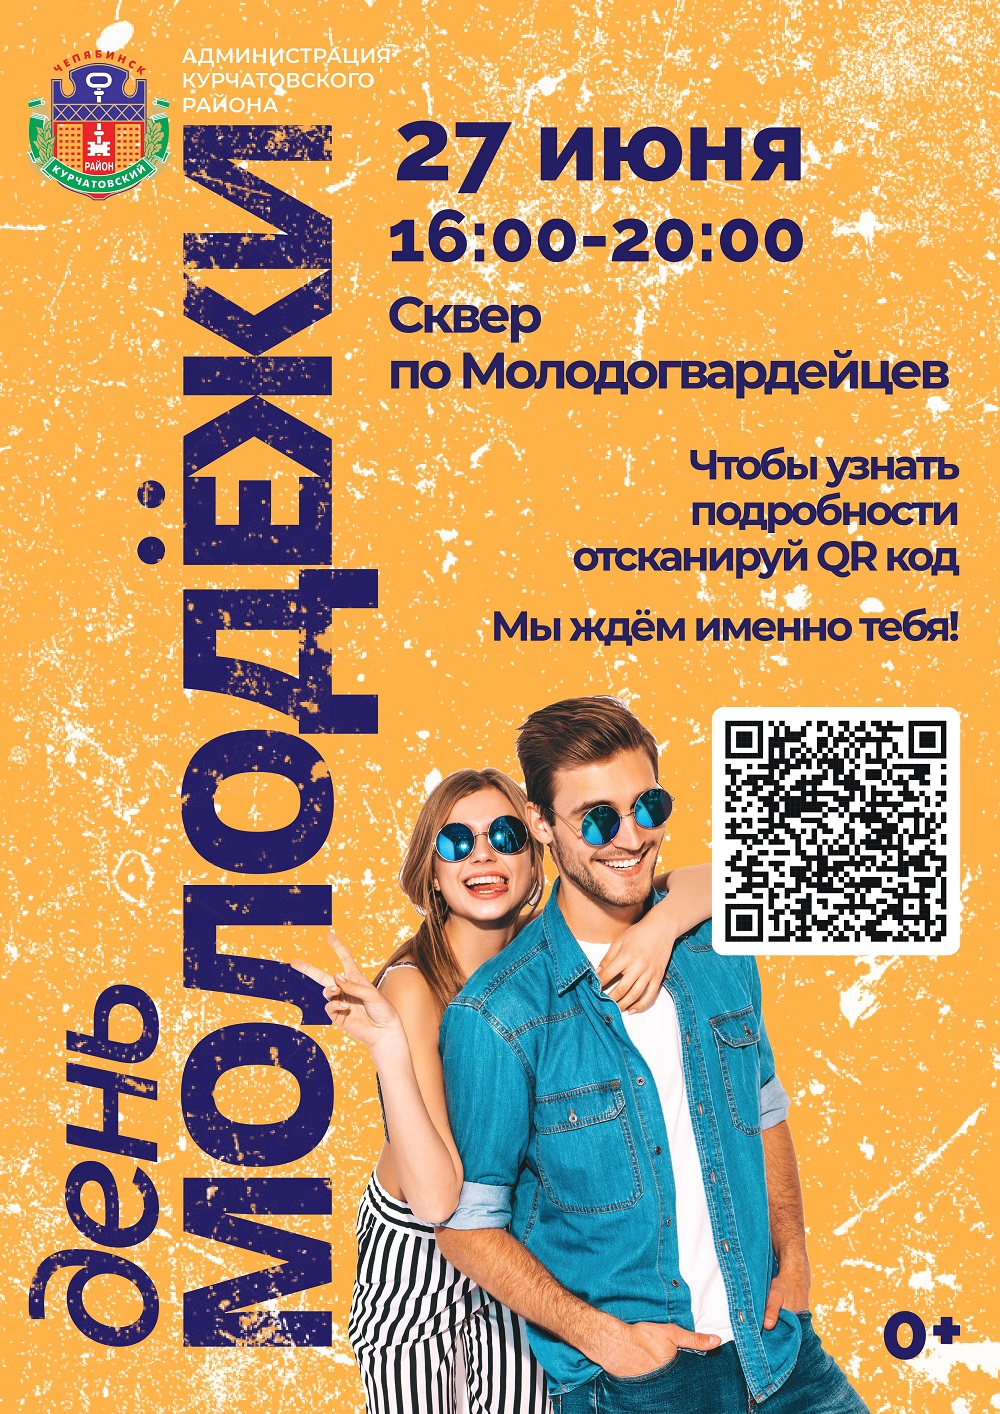 В Курчатовском районе Челябинска в День Молодежи состоится интересный фестиваль